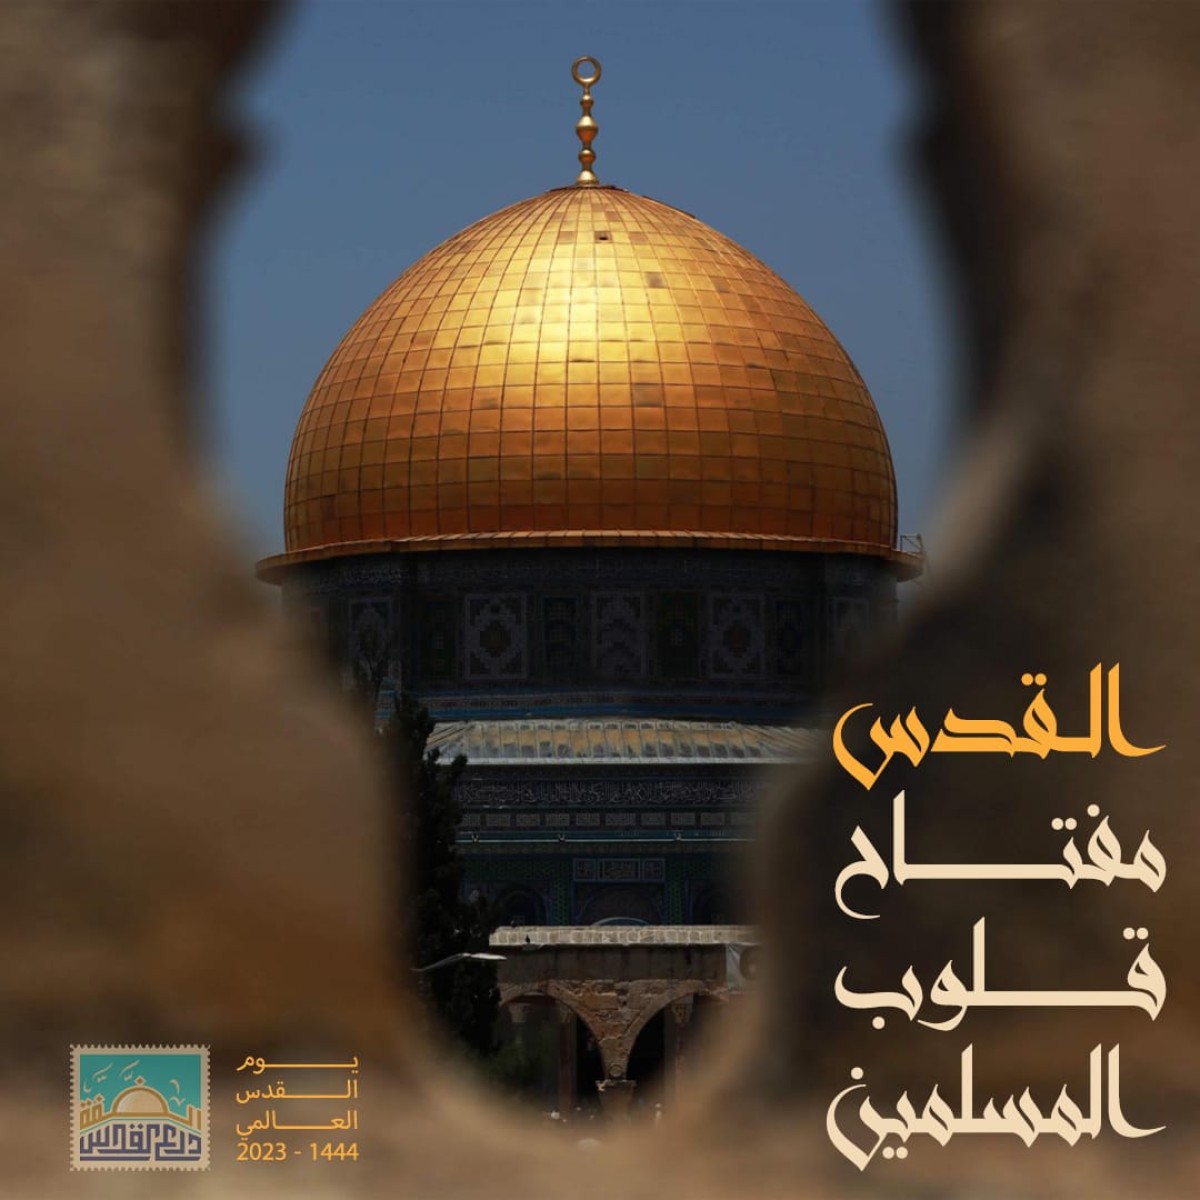 القدس مفتاح قلوب المسلمين